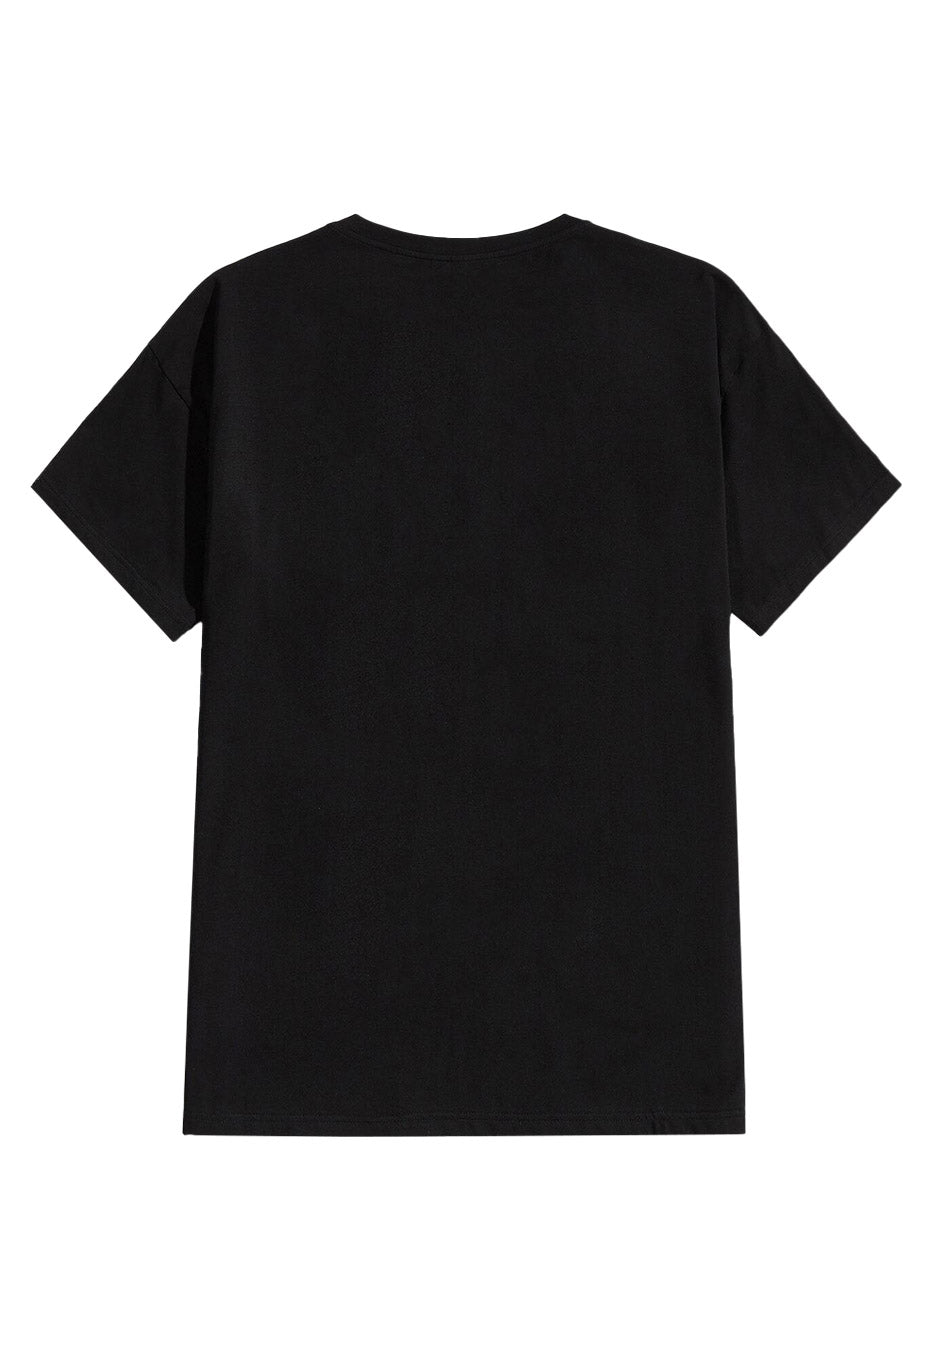 Oranssi Pazuzu - Elements - T-Shirt